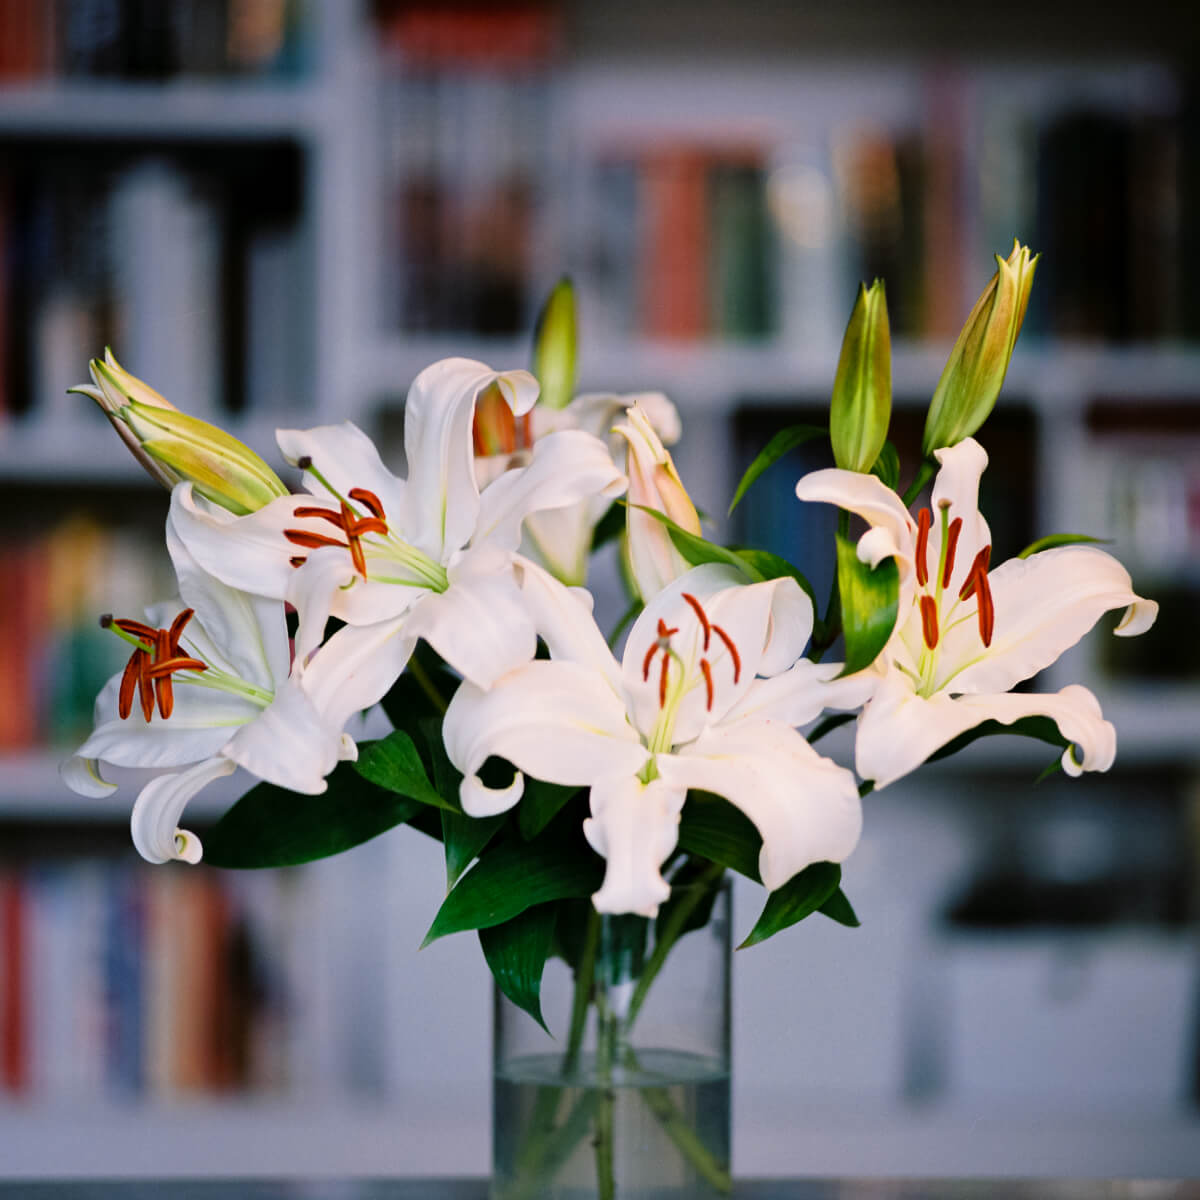 Michael Elliott - Still life lillies #1 - Kiev 60 + Carl Zeiss Jena Sonnar 180mm f:2.8 + Fuji Pro 400H